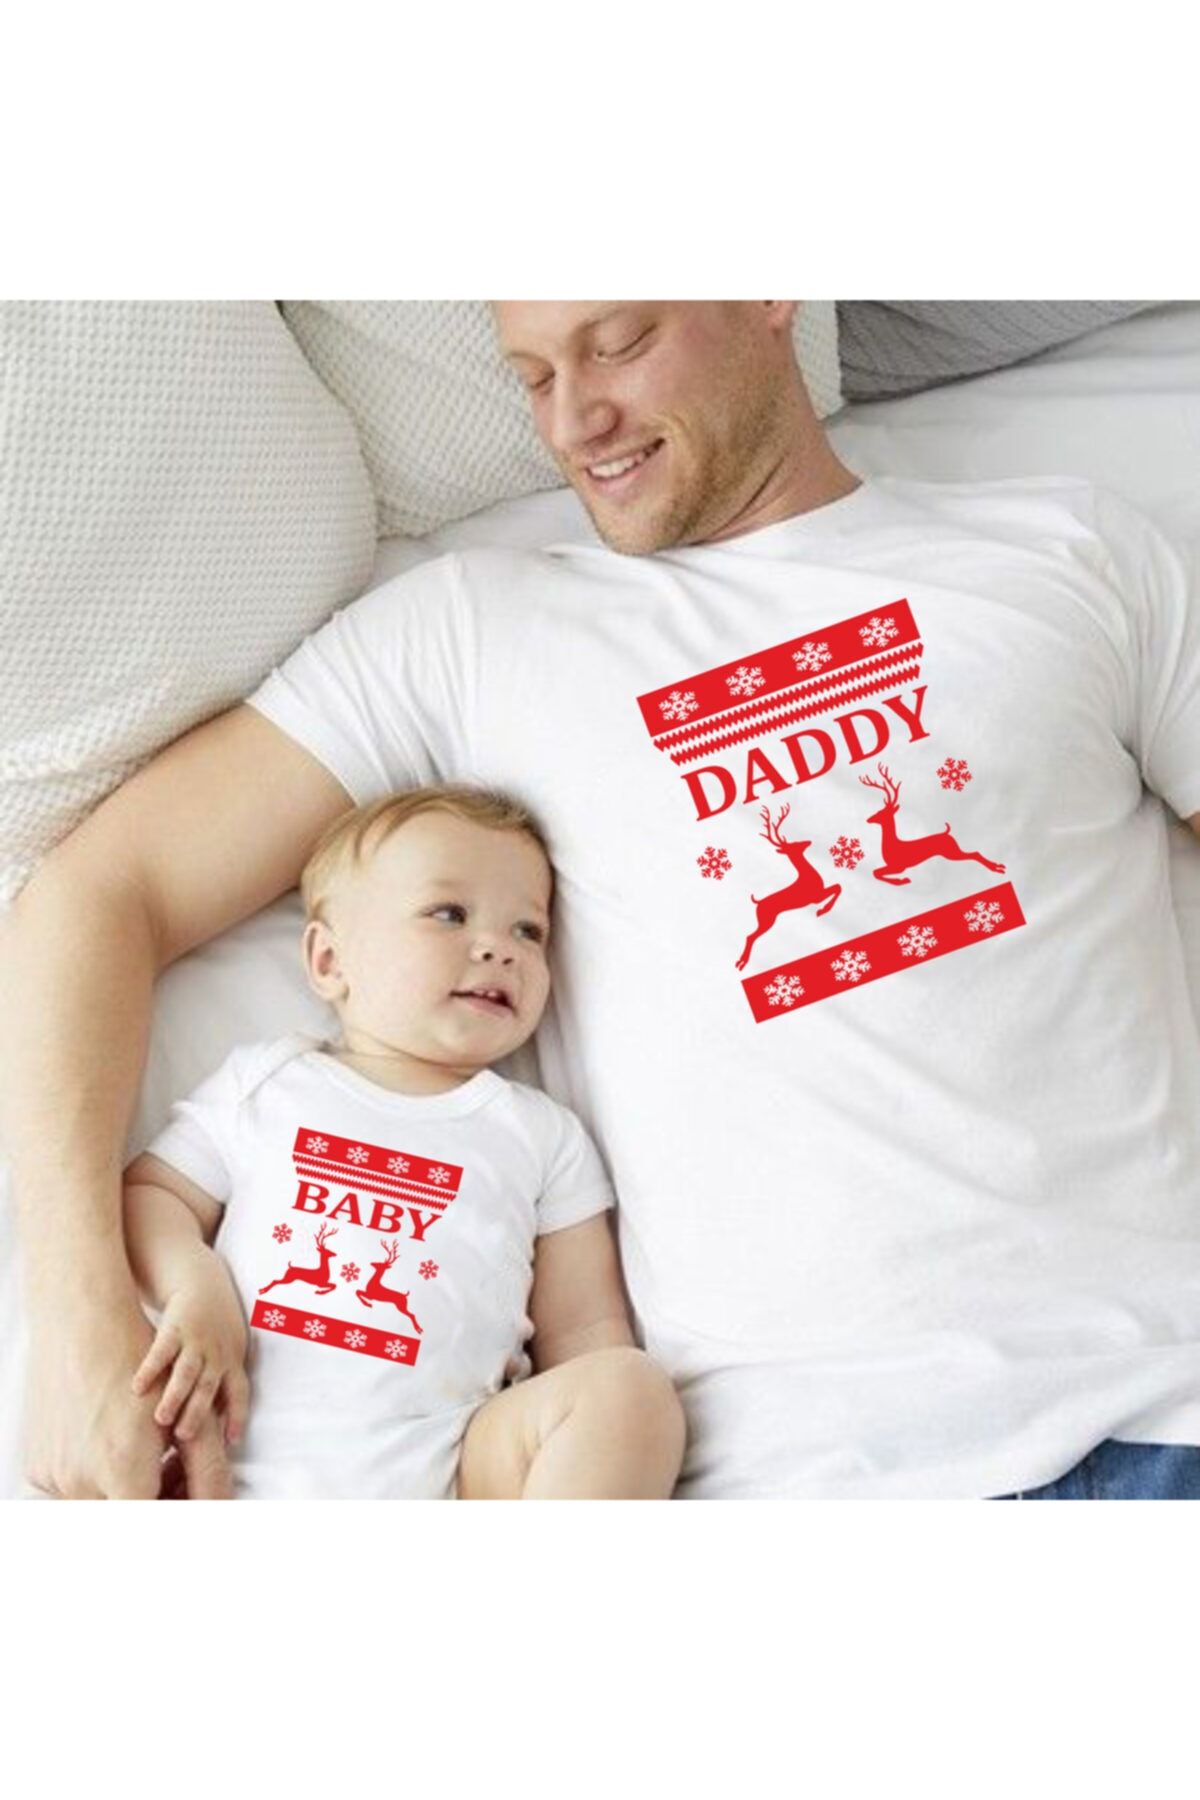 venüsdijital Daddy Baby Yılbaşı Kırmızı Tshirt Zıbın(tekli Üründür Kombin Yapmak Için 2adet Sepete Ekleyiniz)